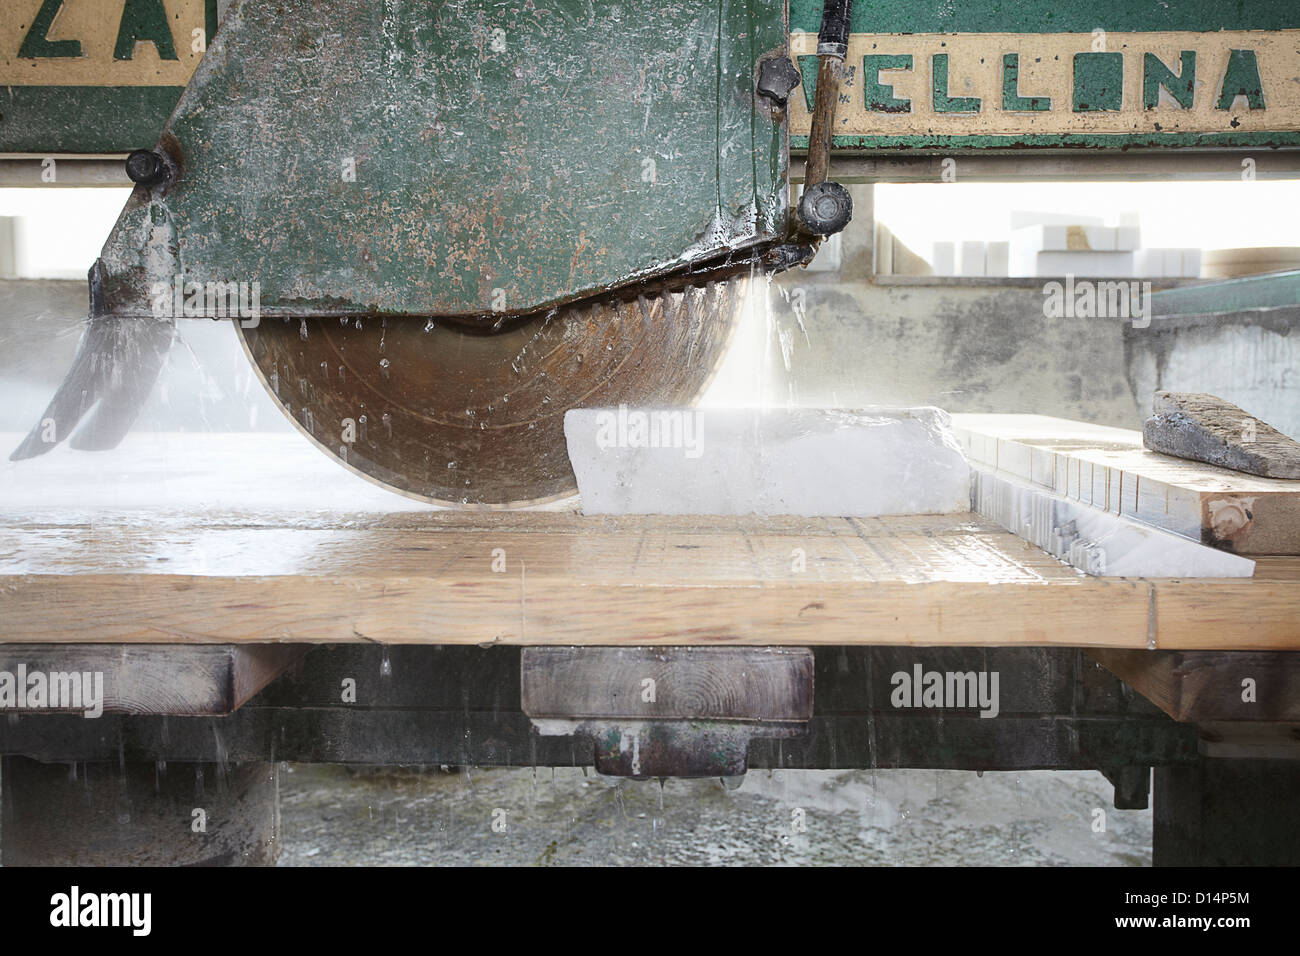 Machinery cutting stone on board Stock Photo